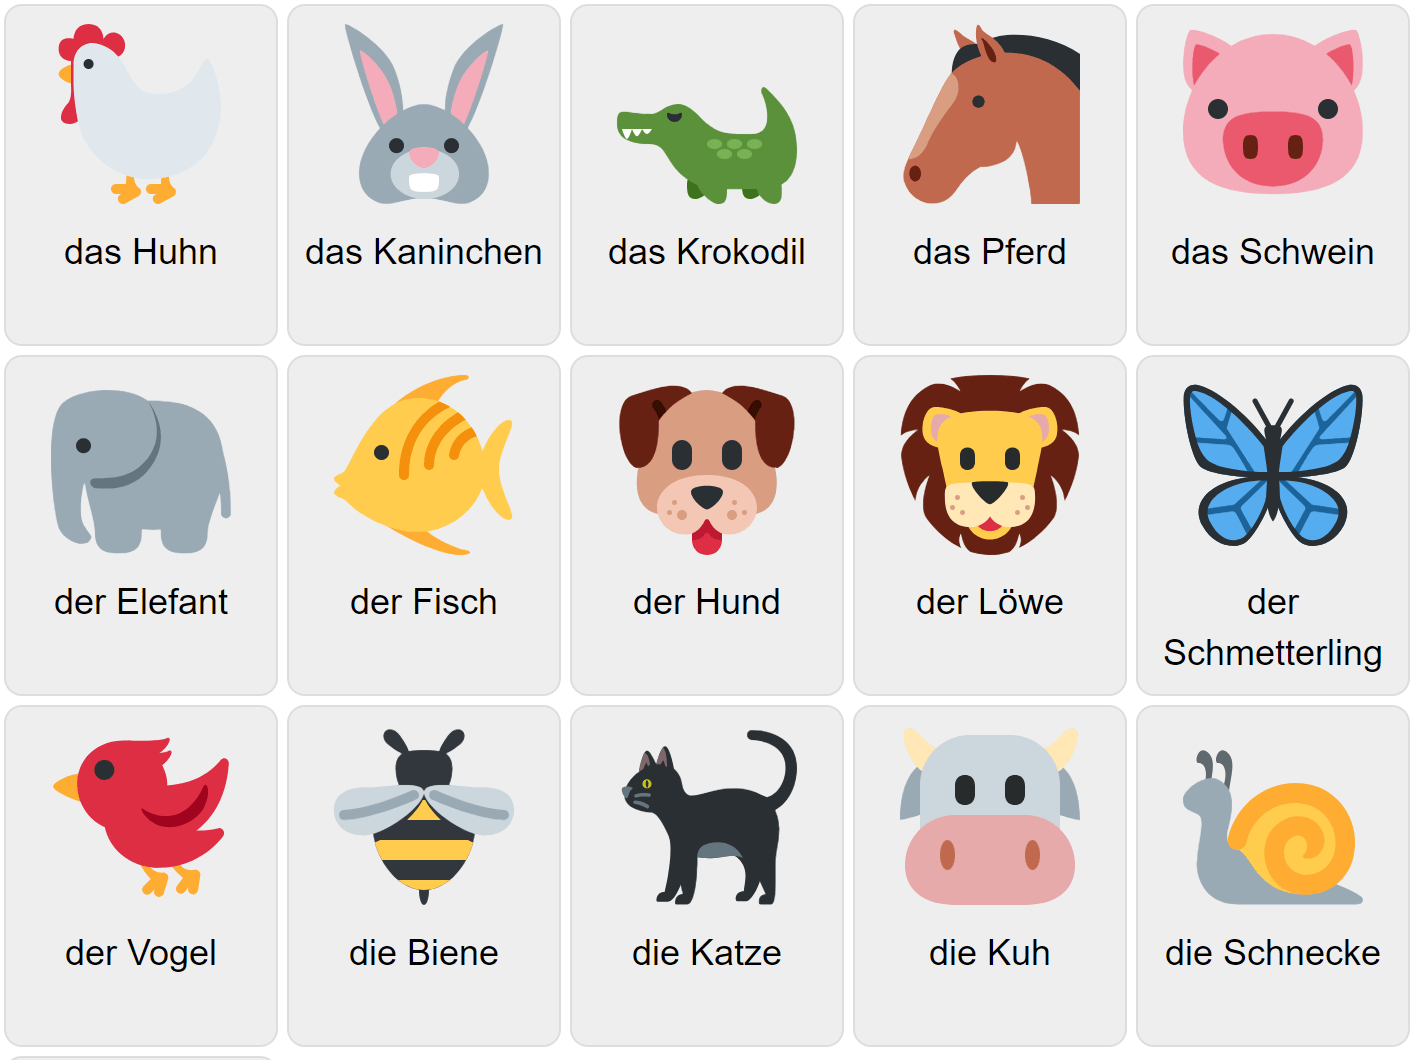 Djur på tyska 1